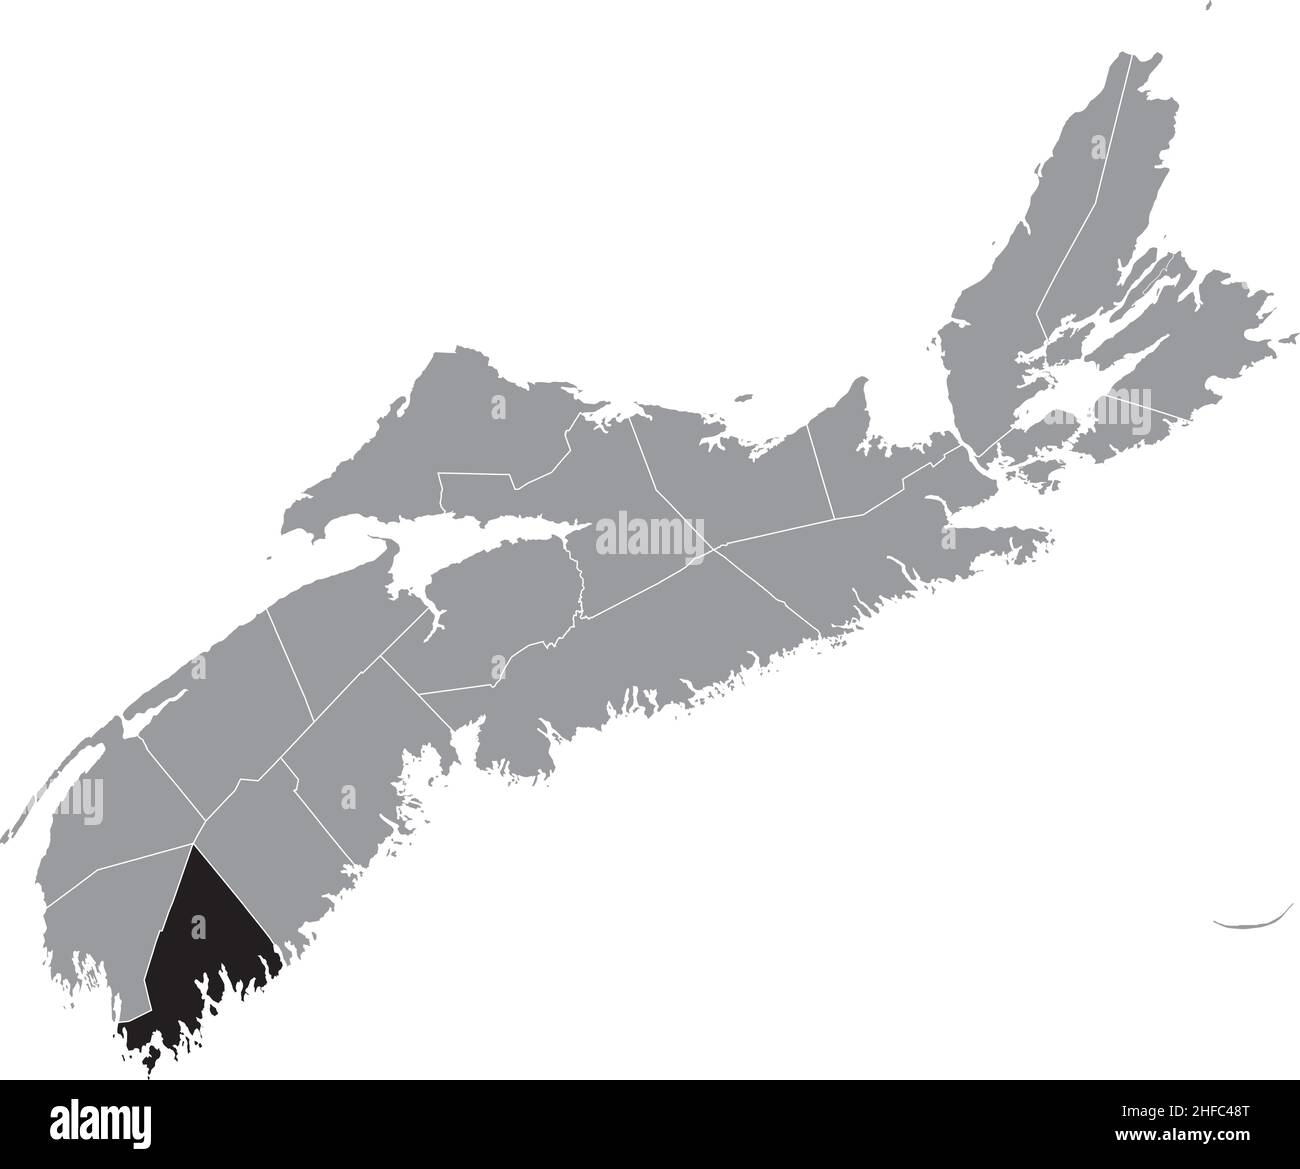 Carte d'emplacement du COMTÉ DE SHELBURNE à l'intérieur de la carte administrative grise des comtés de la province canadienne de la Nouvelle-Écosse, Cana Illustration de Vecteur